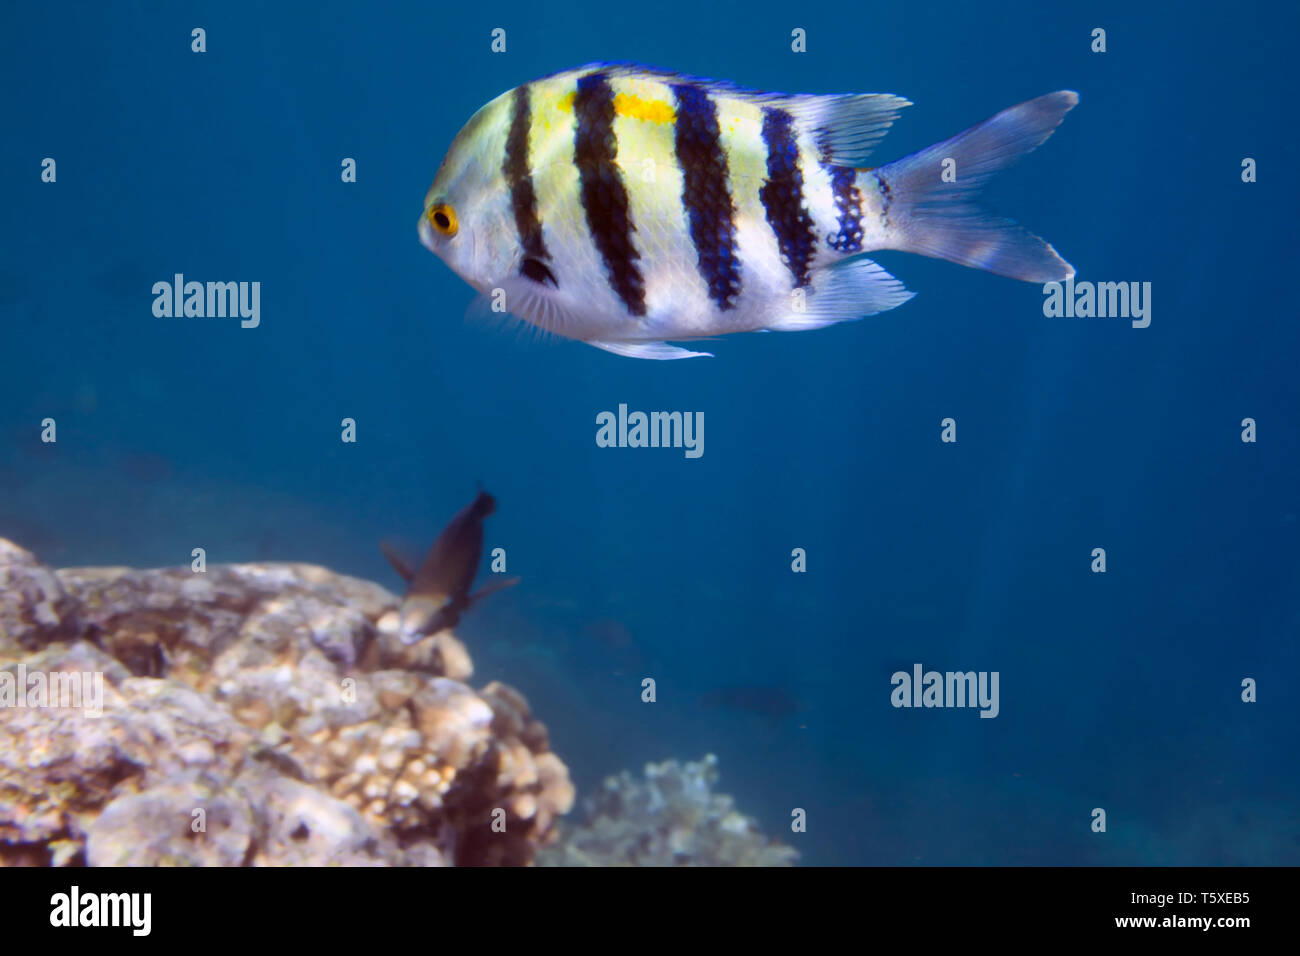 Castagnole Abudefduf sexfasciatus. Sergente maggiore di pesce. La vita subacquea del Mar Rosso in Egitto. I pesci di acqua salata e la barriera corallina. Foto Stock